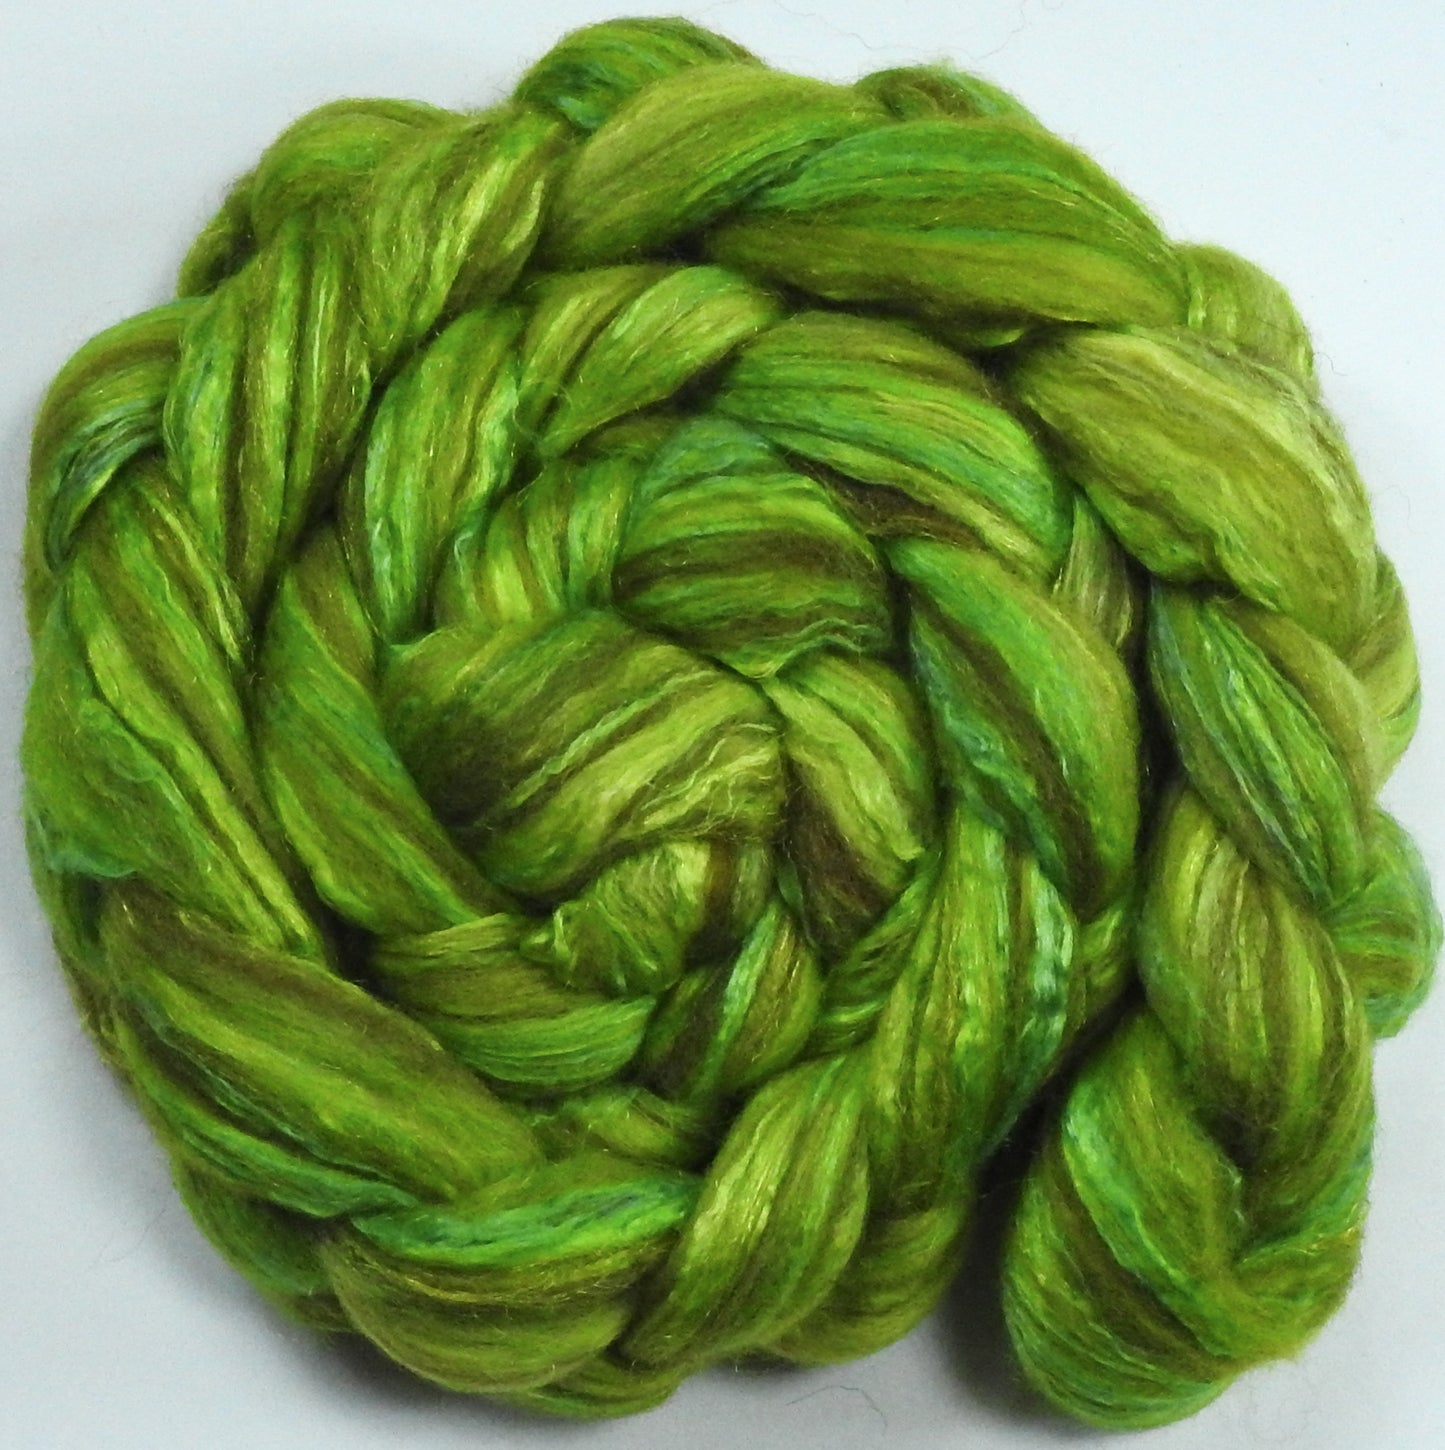 Tree Frog (5.6) - Batt in a Braid #7 - Polwarth/ Manx / Mulberry silk/ Firestar (30/30/30/10)